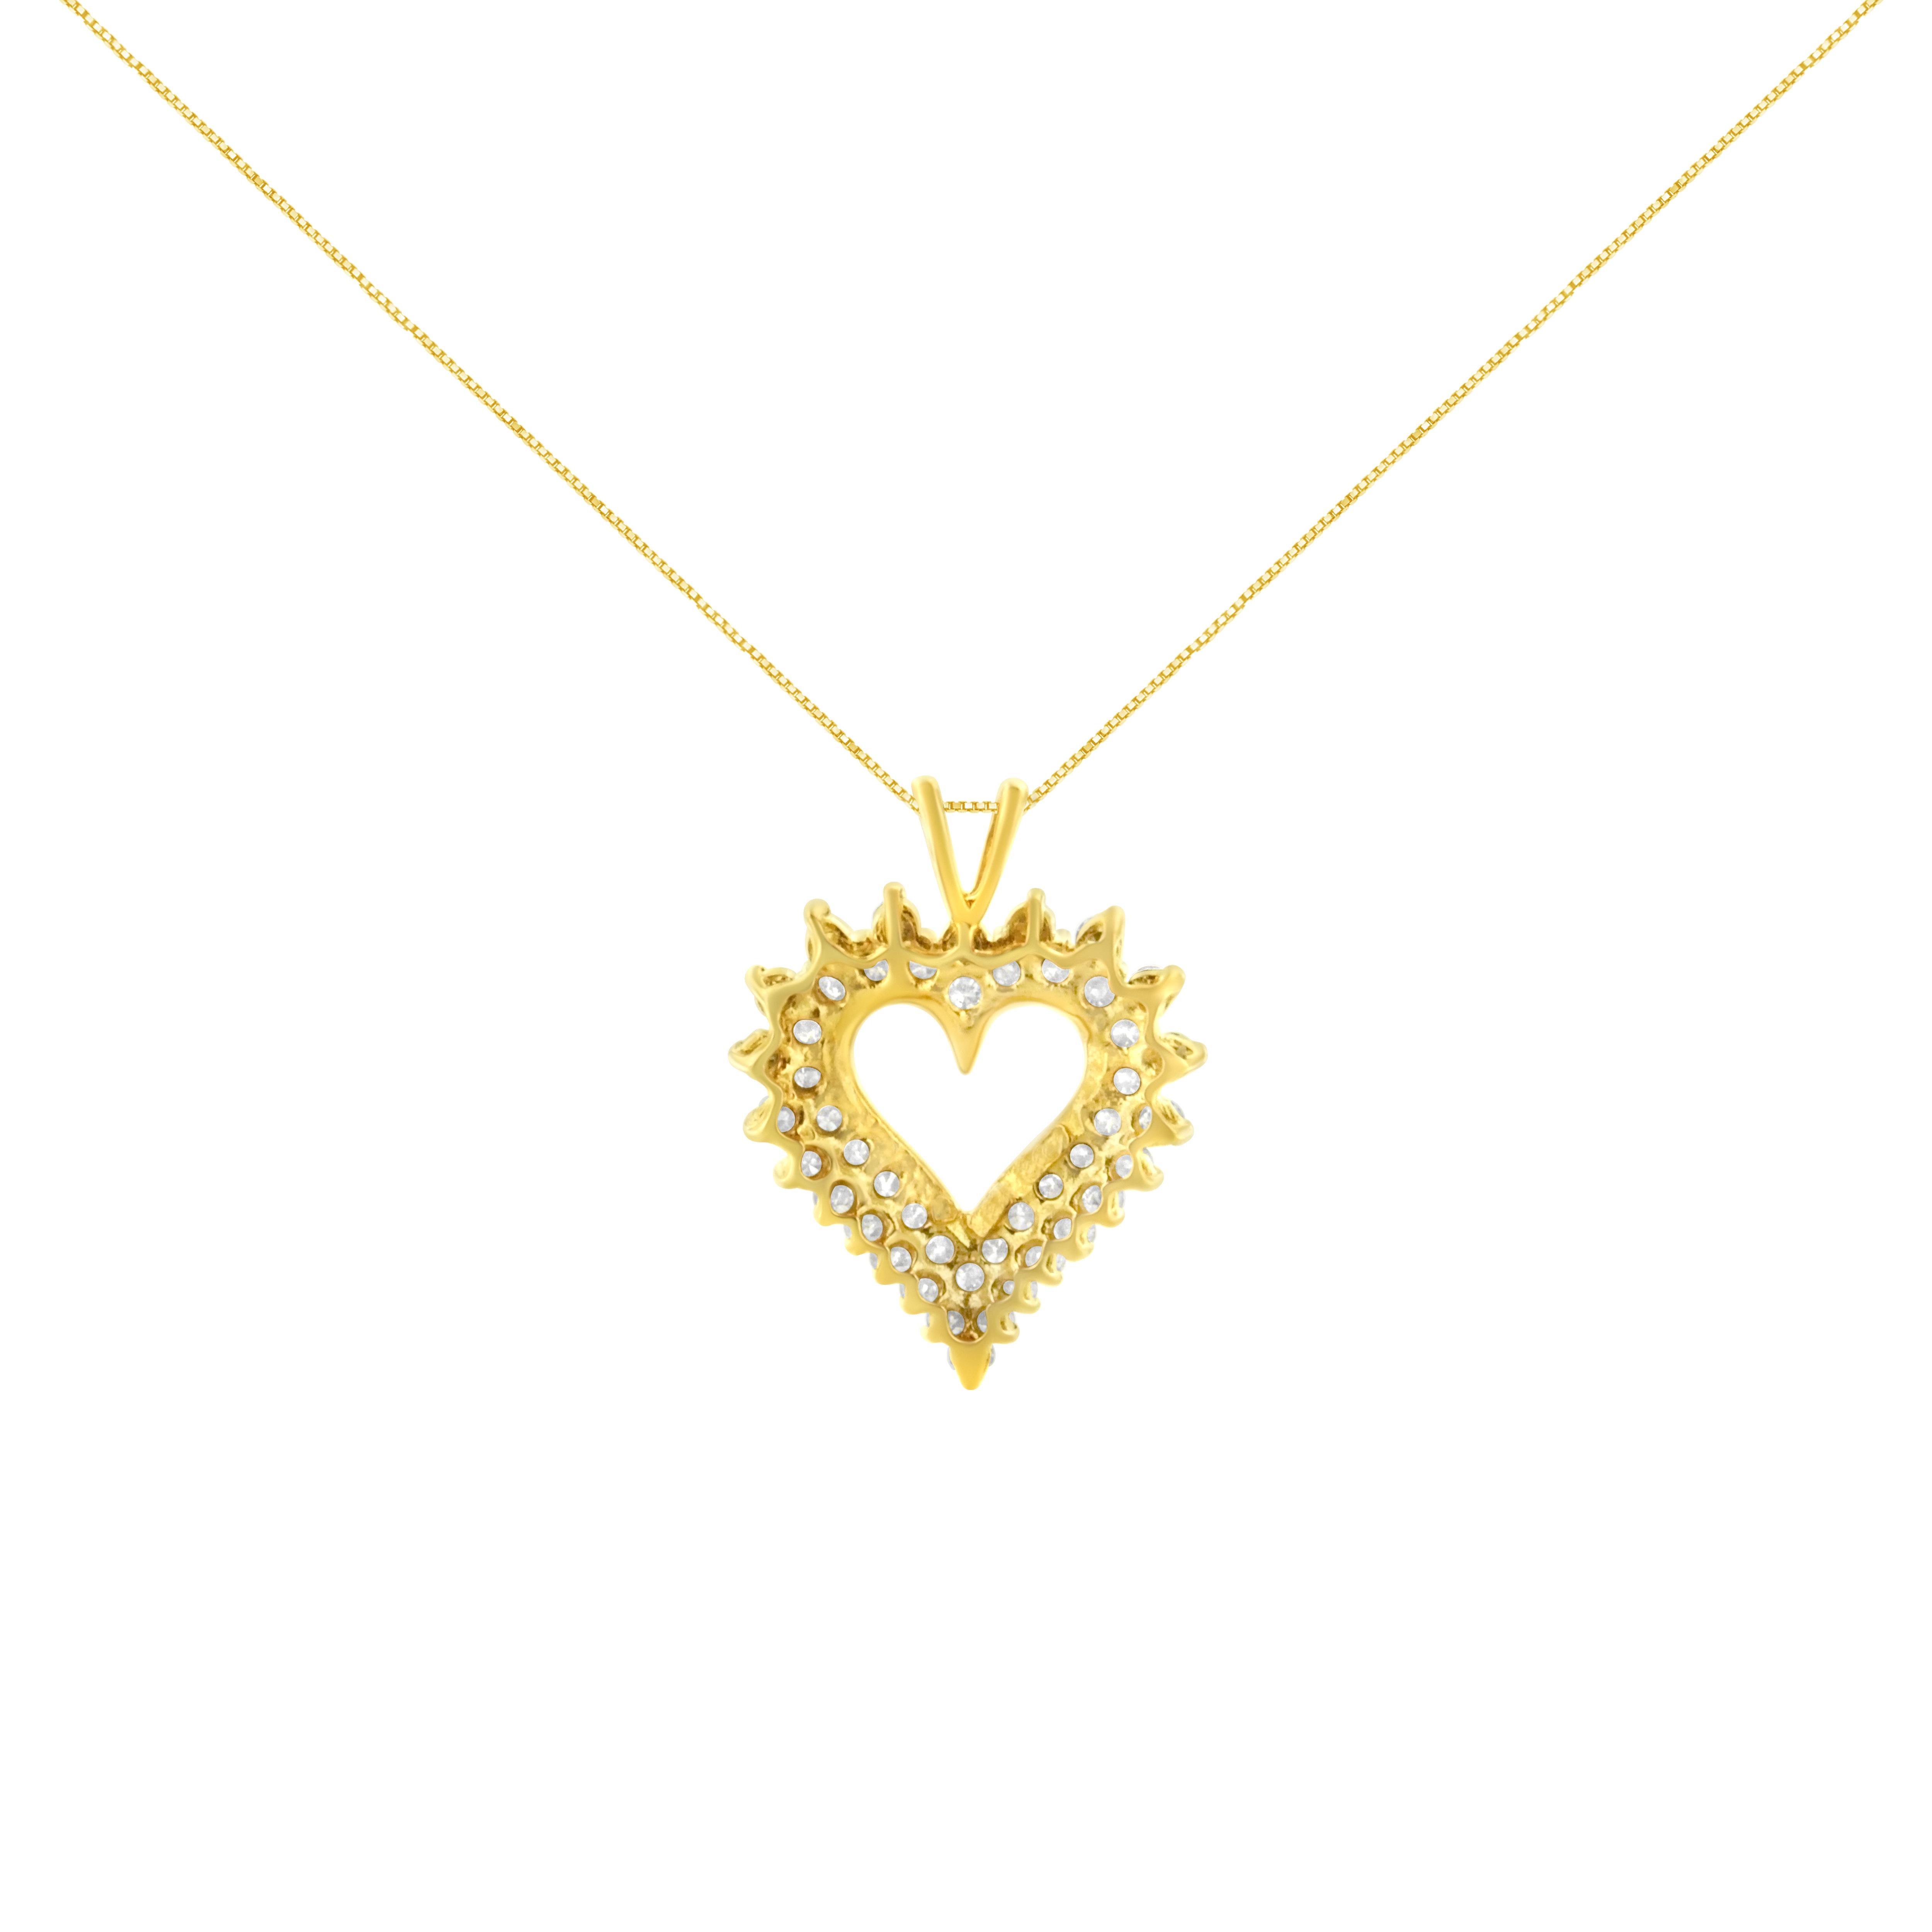 Deux rangées de diamants naturels et étincelants sont serties dans de l'or jaune 10 carats pour créer un superbe motif de cœur ouvert dans ce magnifique collier-pendentif pour elle. Ce pendentif est orné de 46 diamants ronds de pureté I1-I2 et de